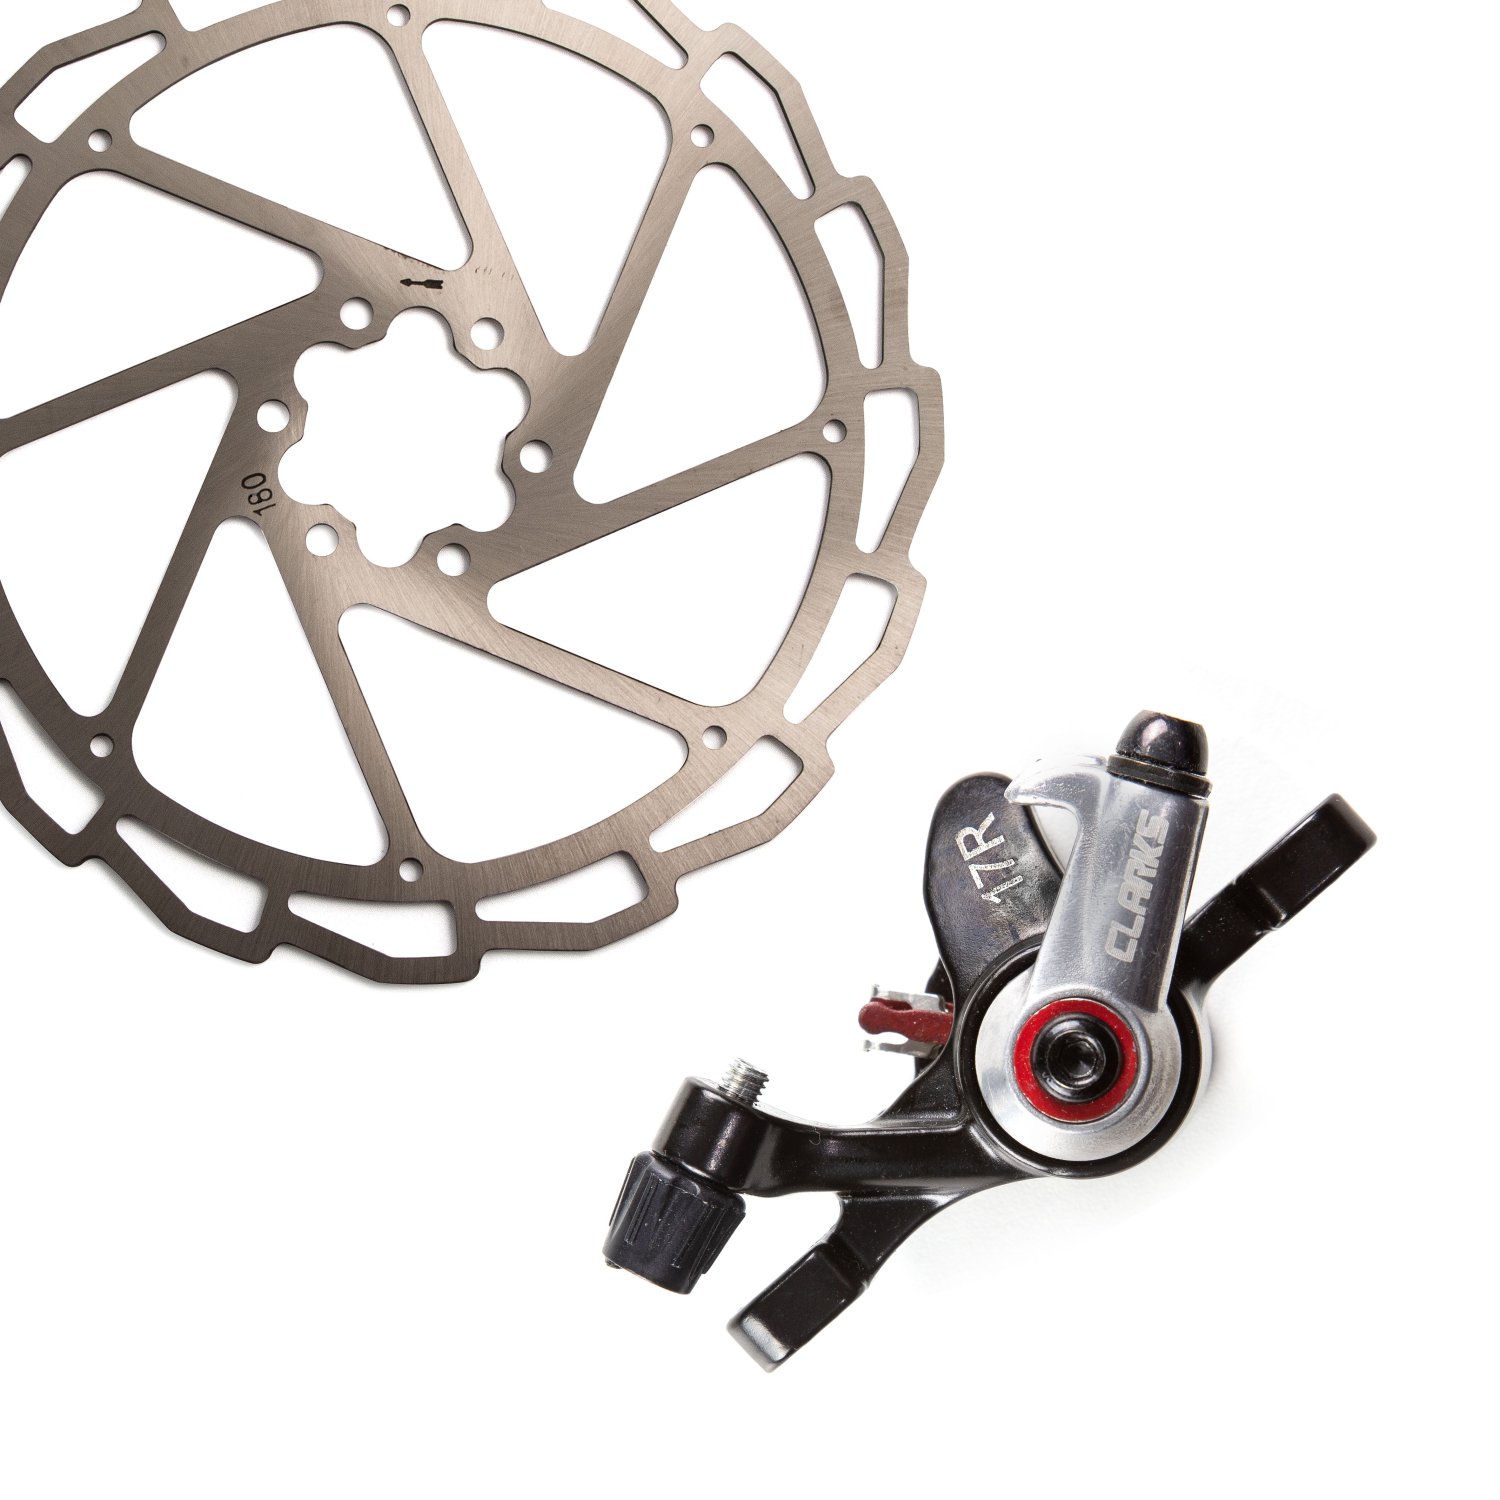 Тормозной набор CLARKS CMD-17ROAD, одна сторона, механический, дисковый, передний/задний, 3-635 калиперы велосипедные alhonga twiner m дисковый механический комплект передний задний чёрный twiner m